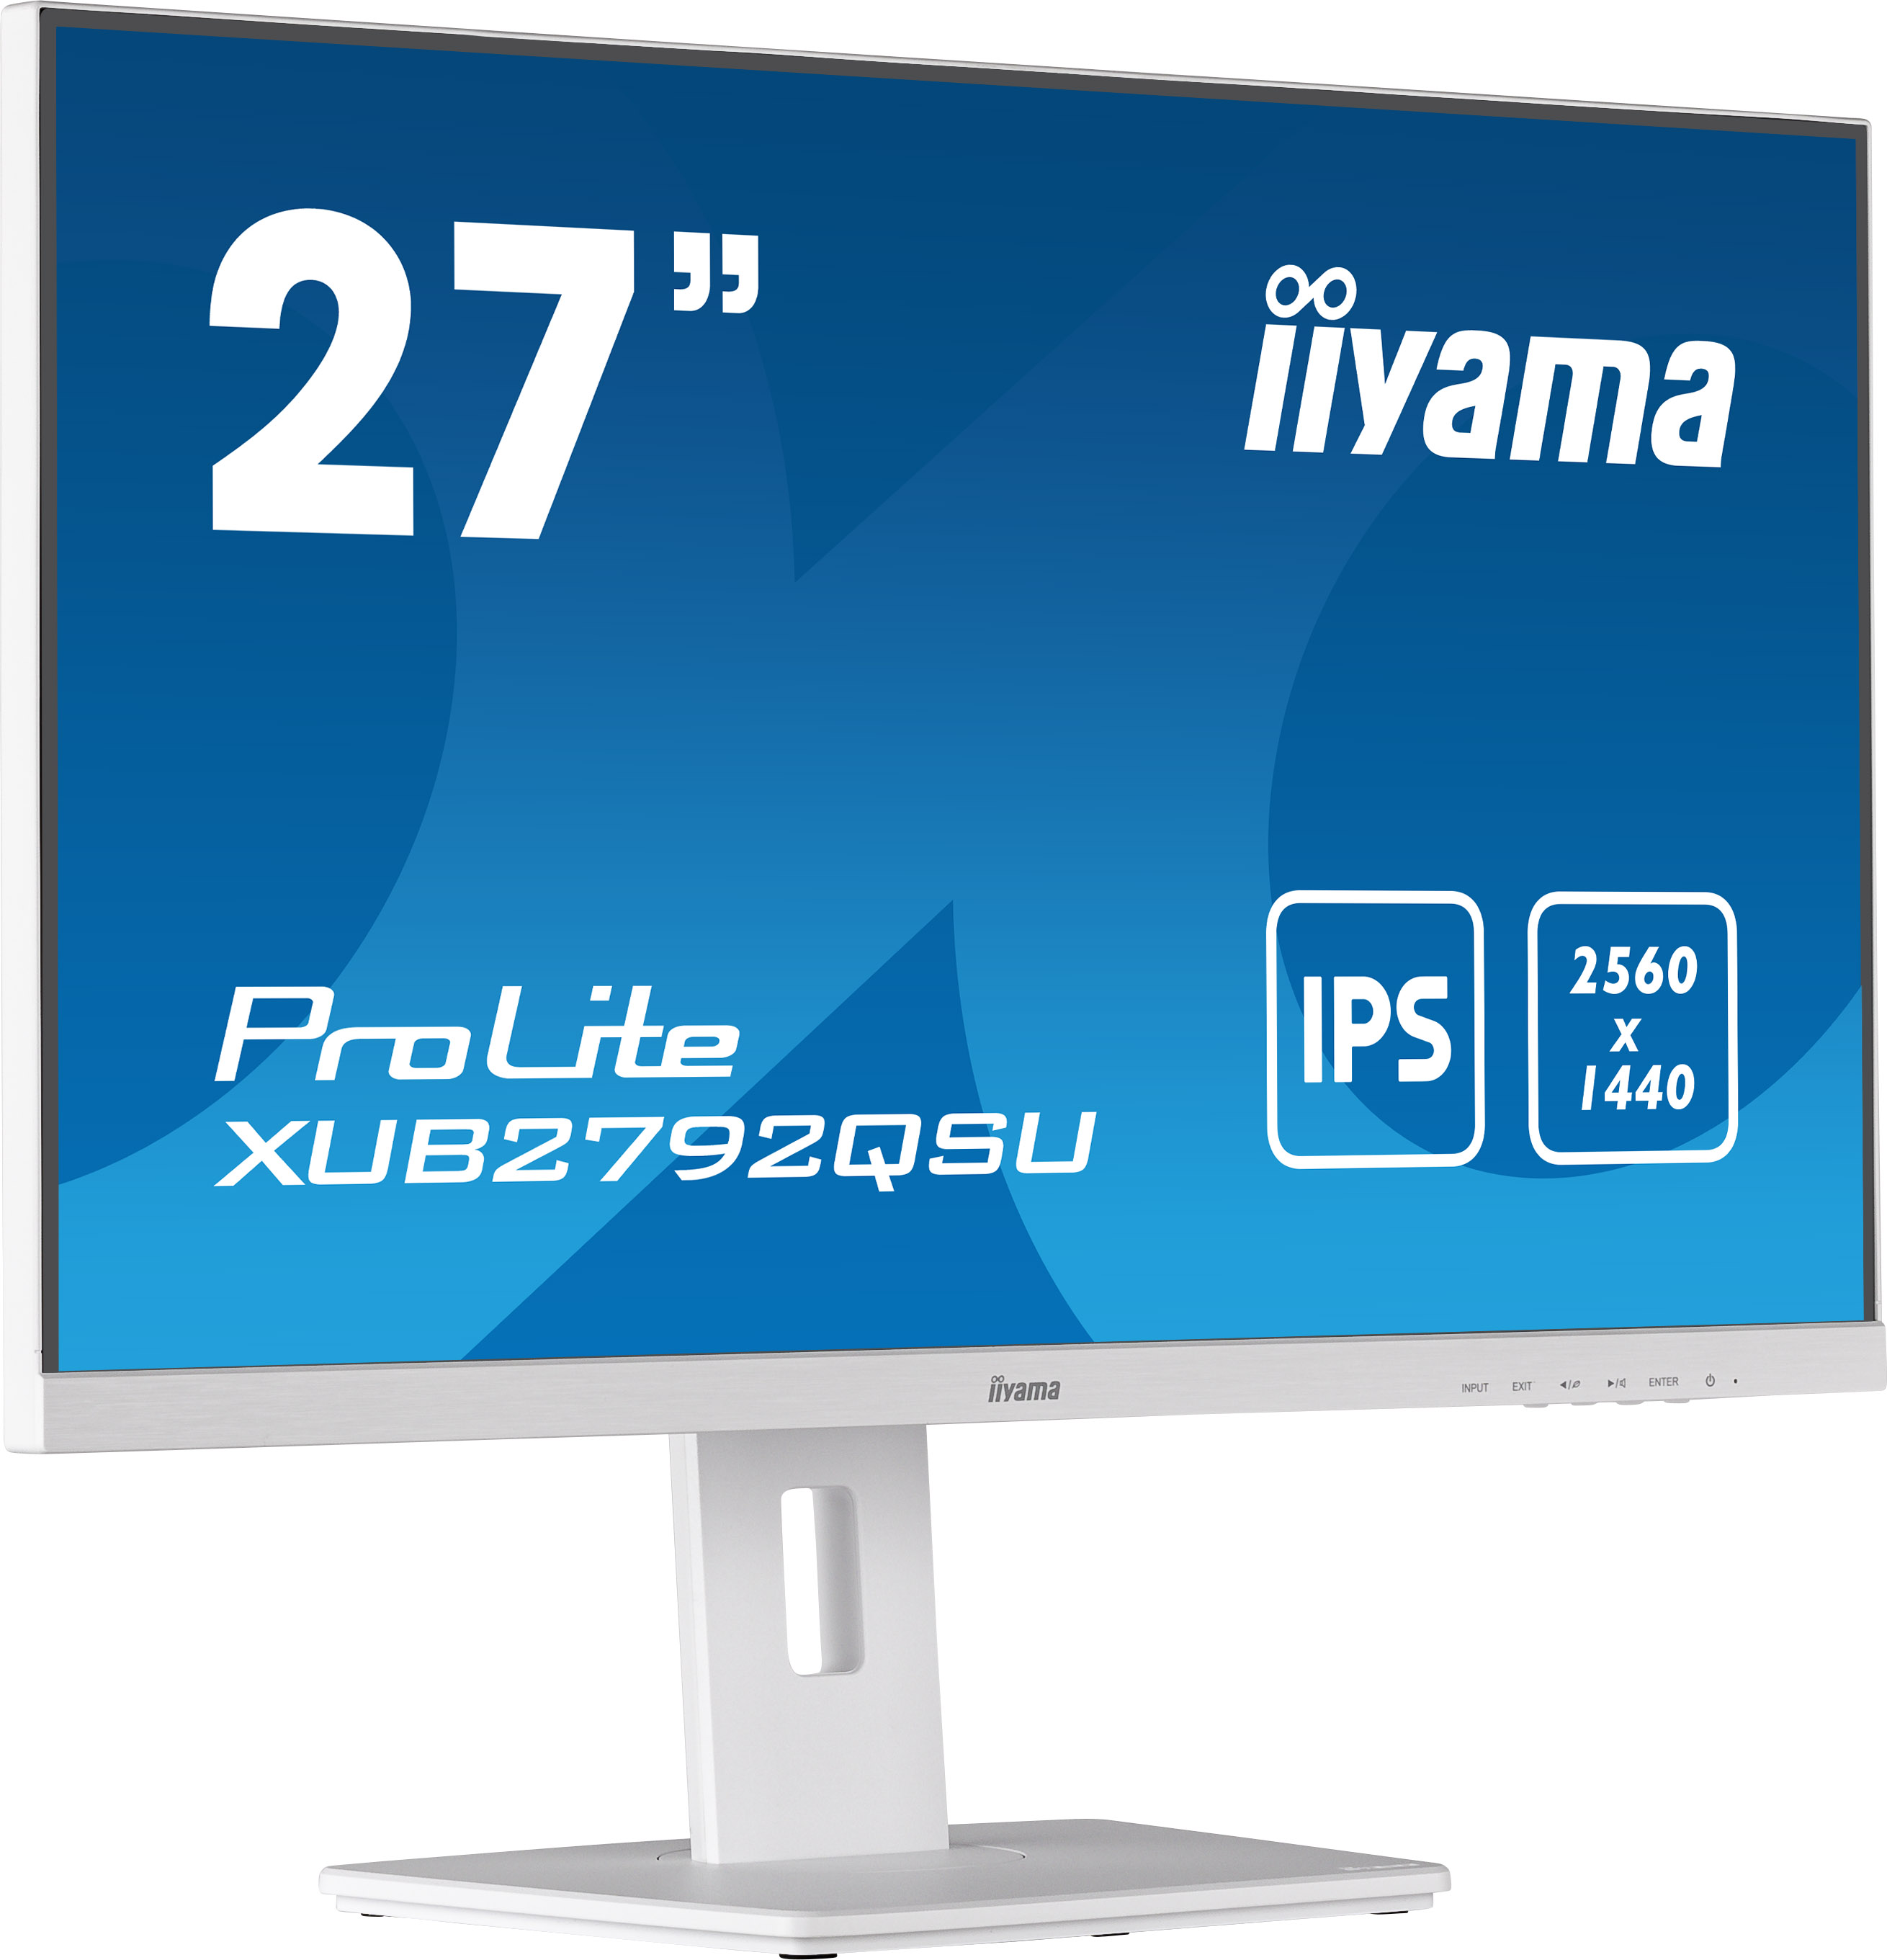 IIYAMA Ecran 27 pouces 4K Ultra HD IIXUB2792UHSUB5 sur